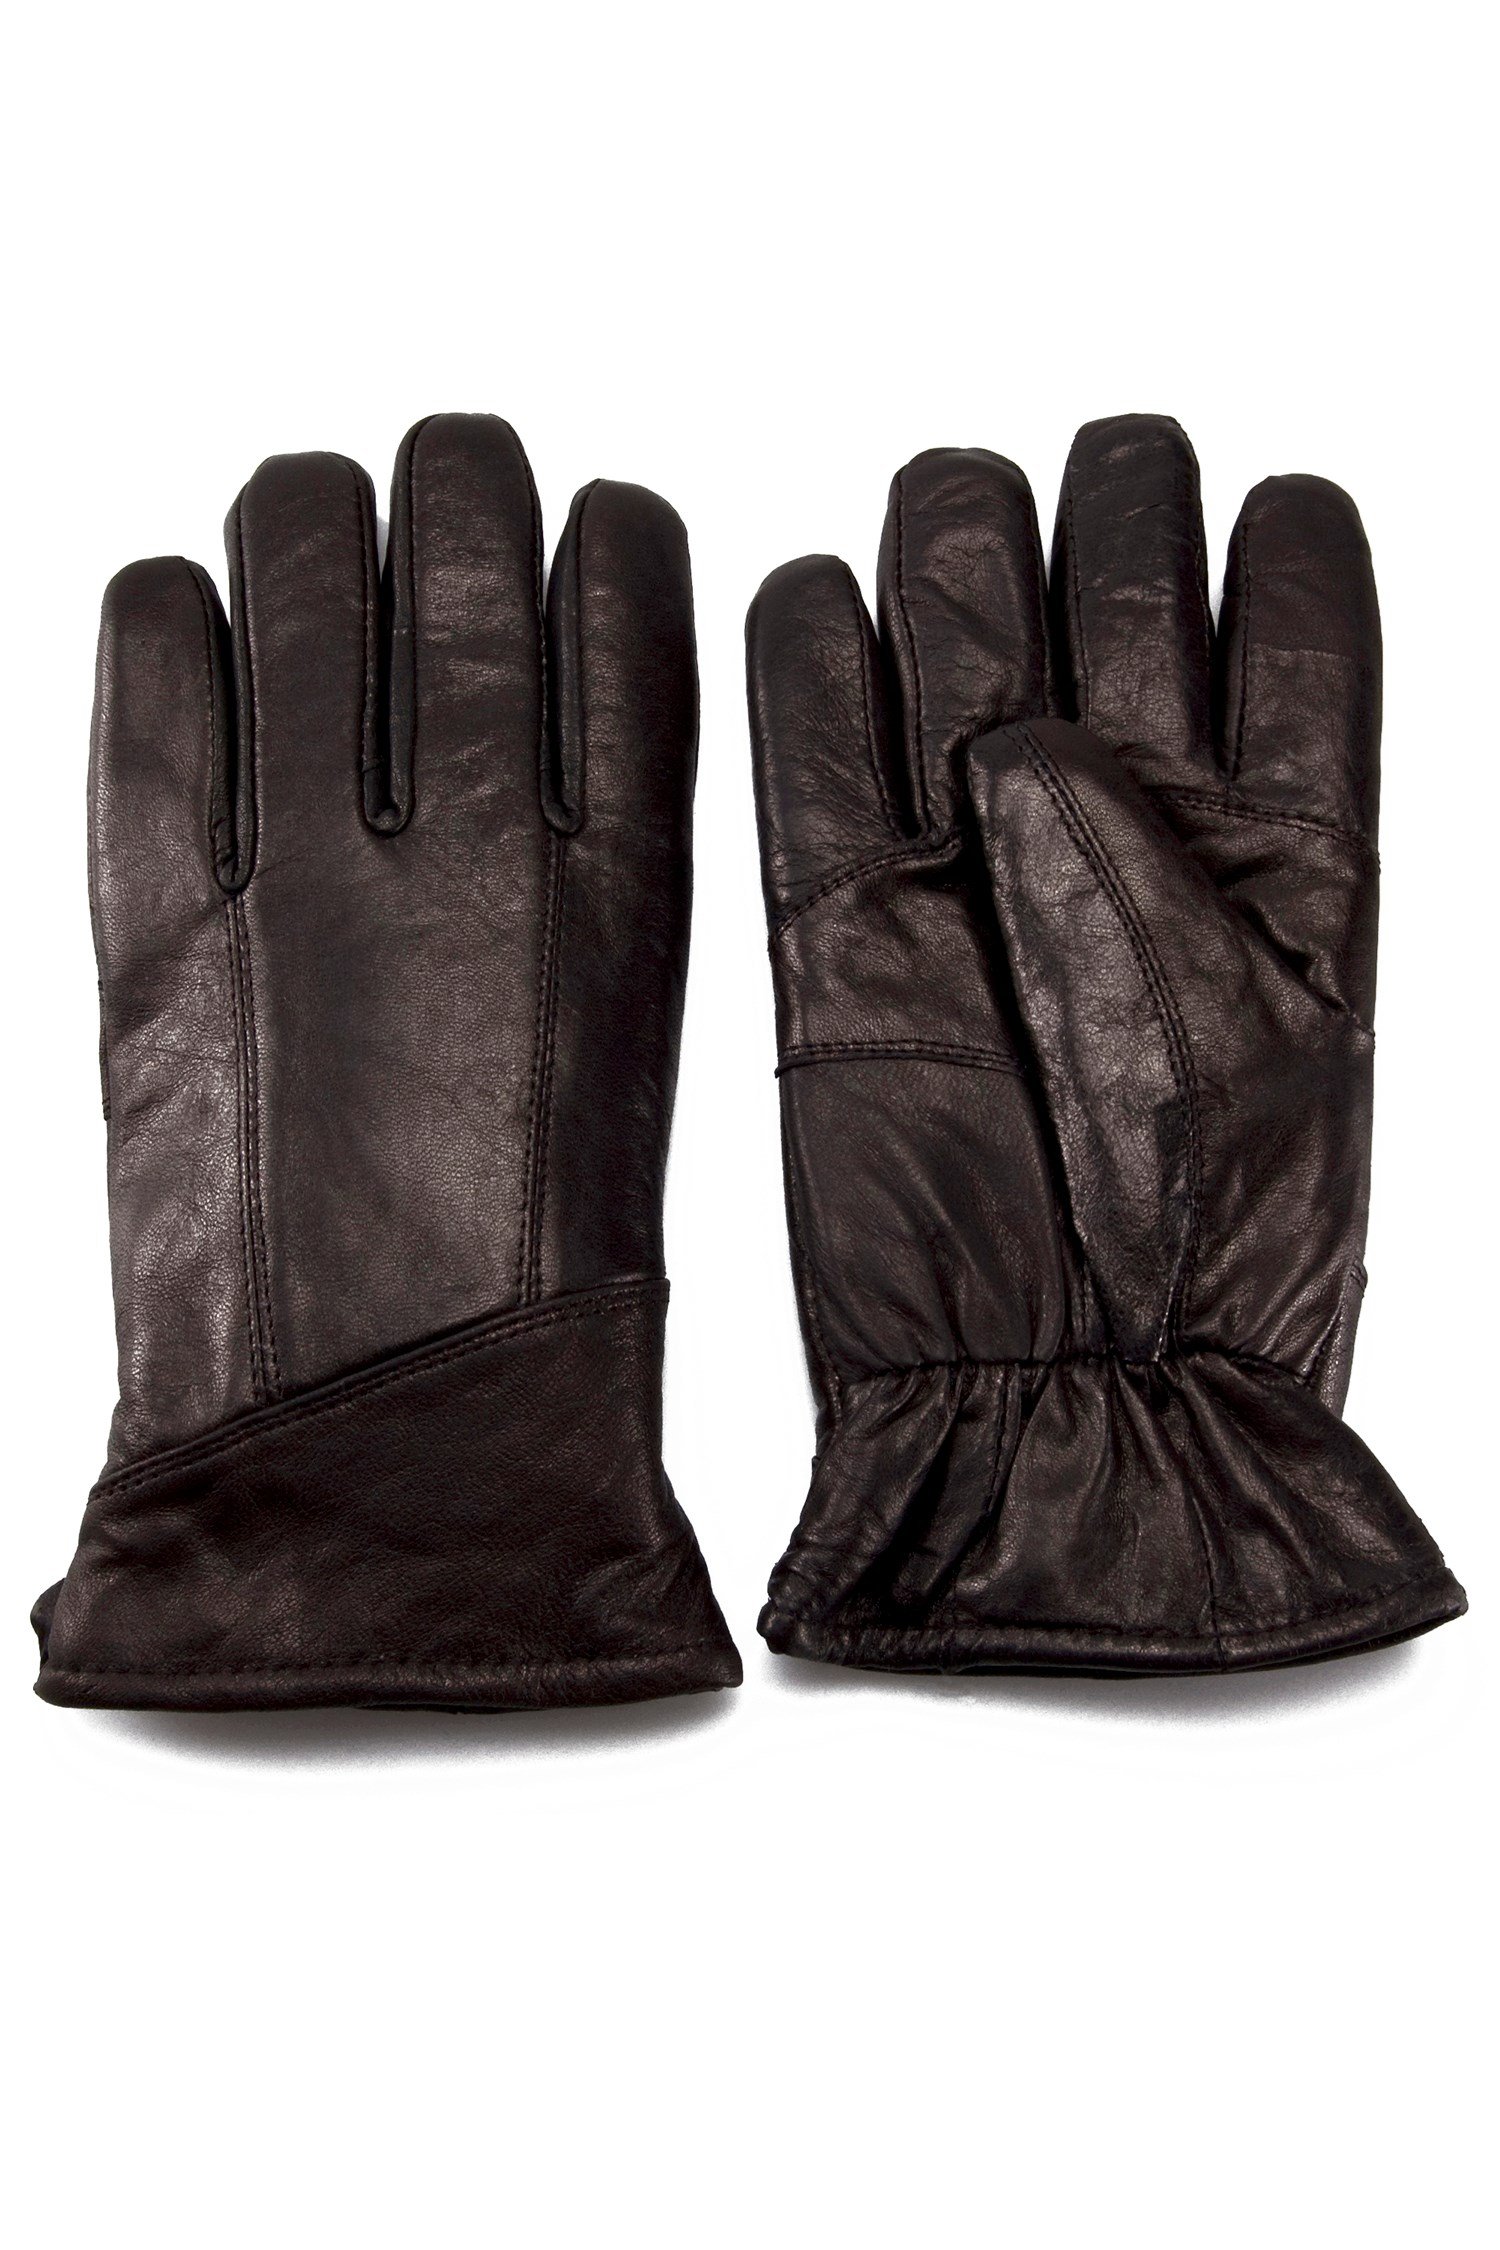 Mens LeatherandSheepskin Gloves -